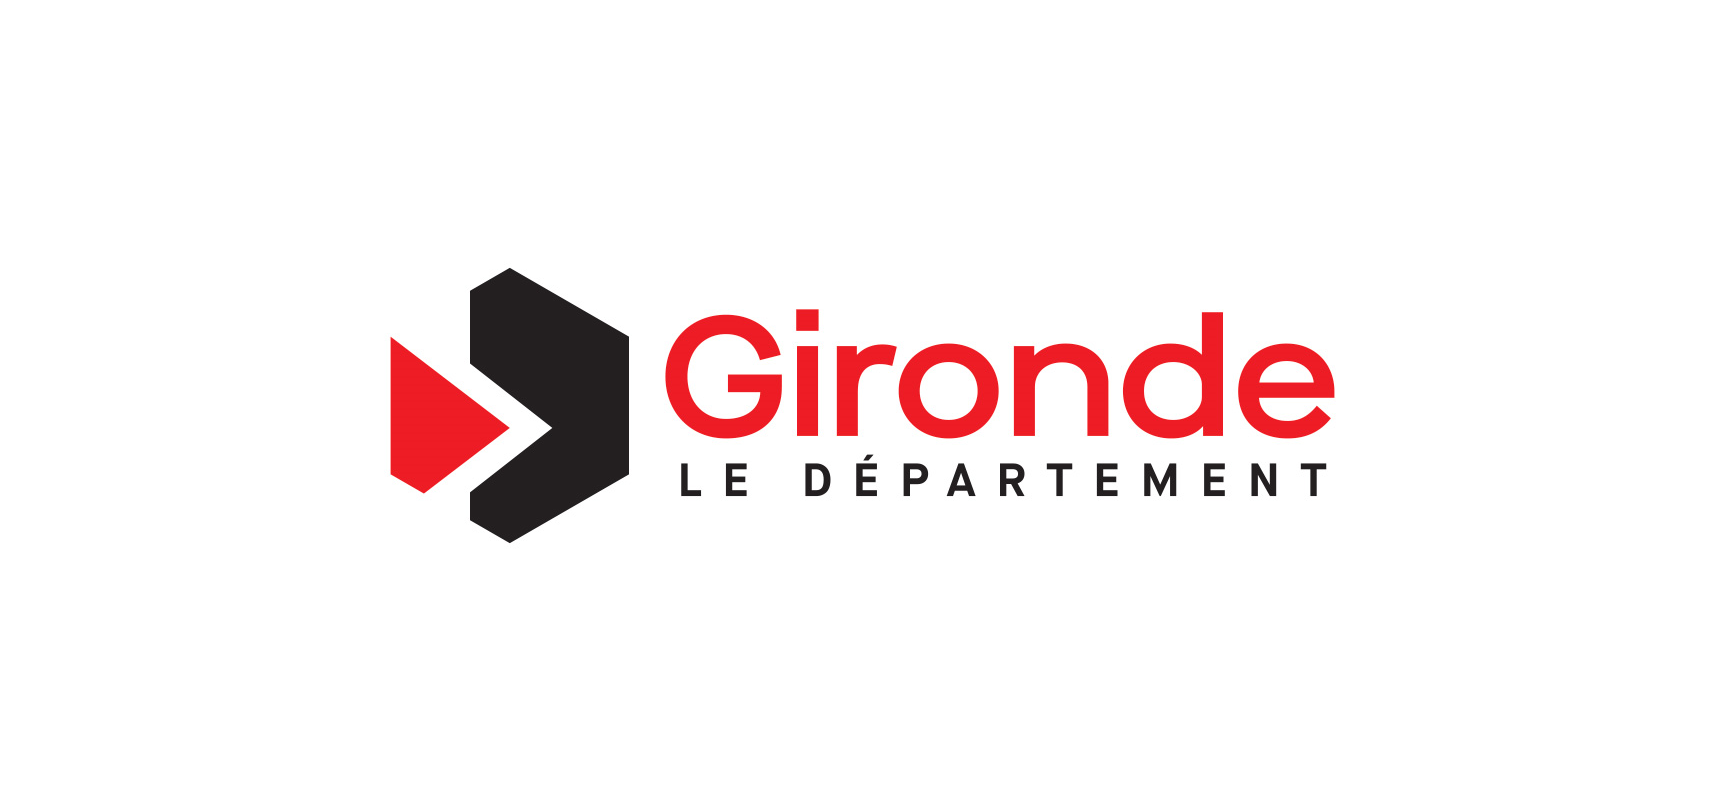 Gironde Le Département